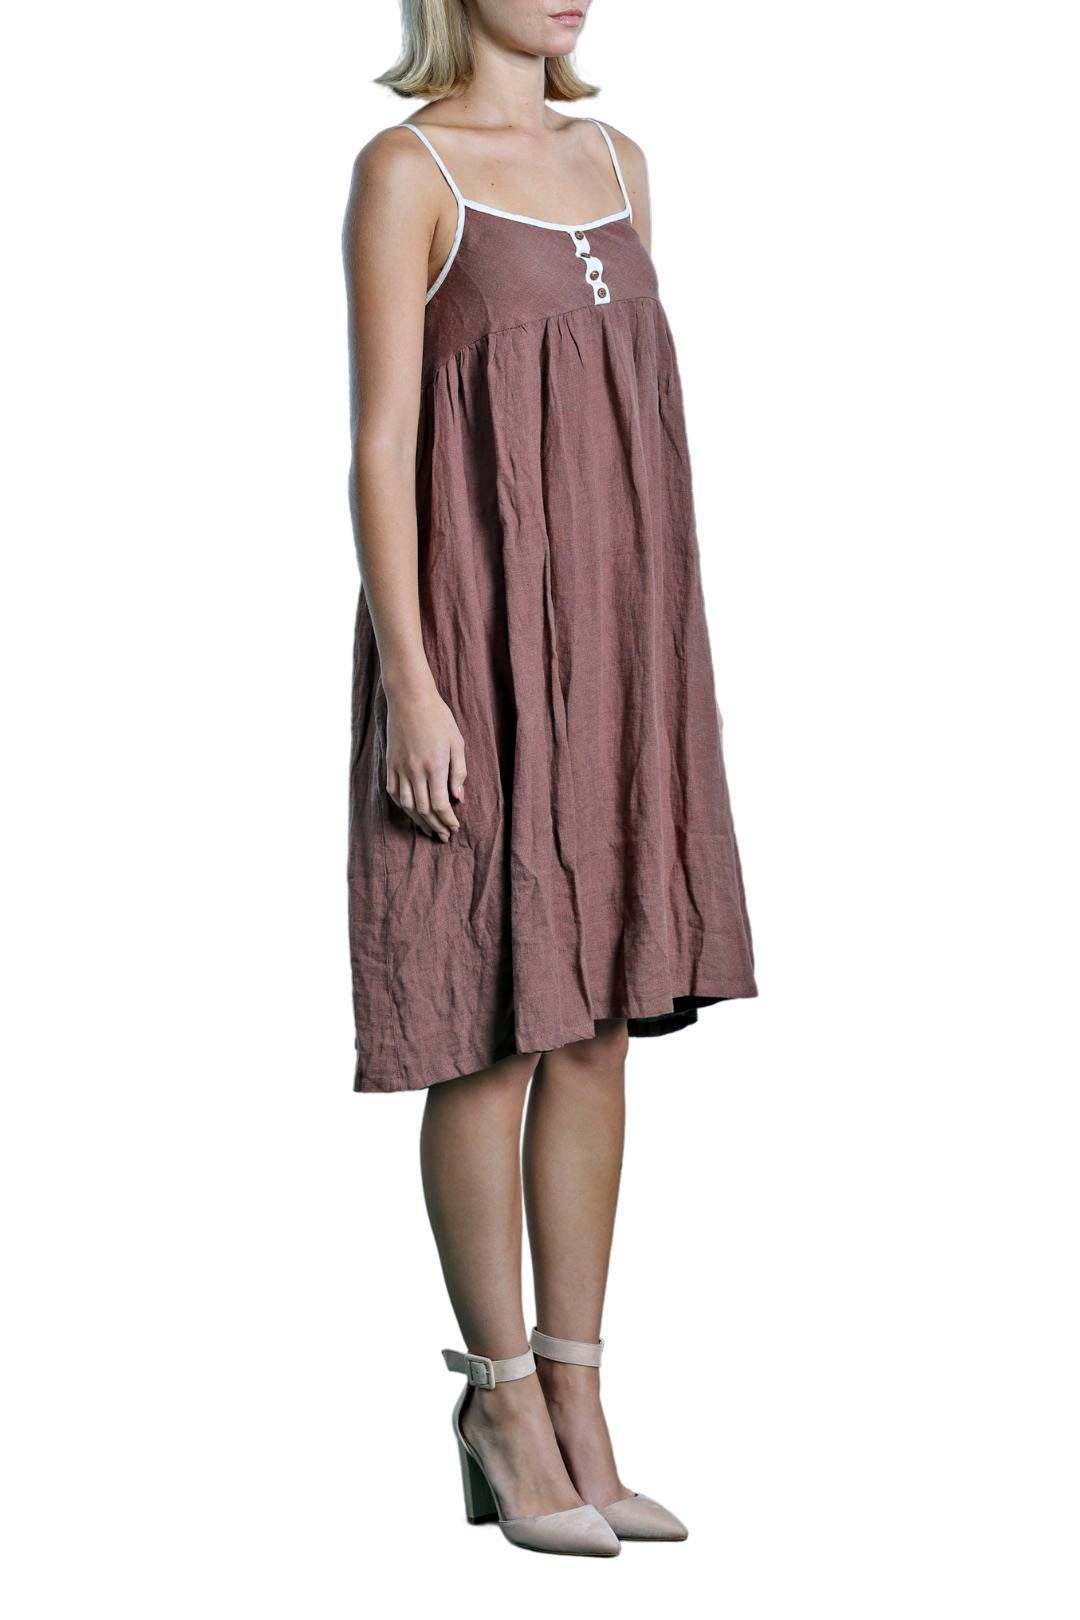 Brave + True - Brown Midi Slip Dress